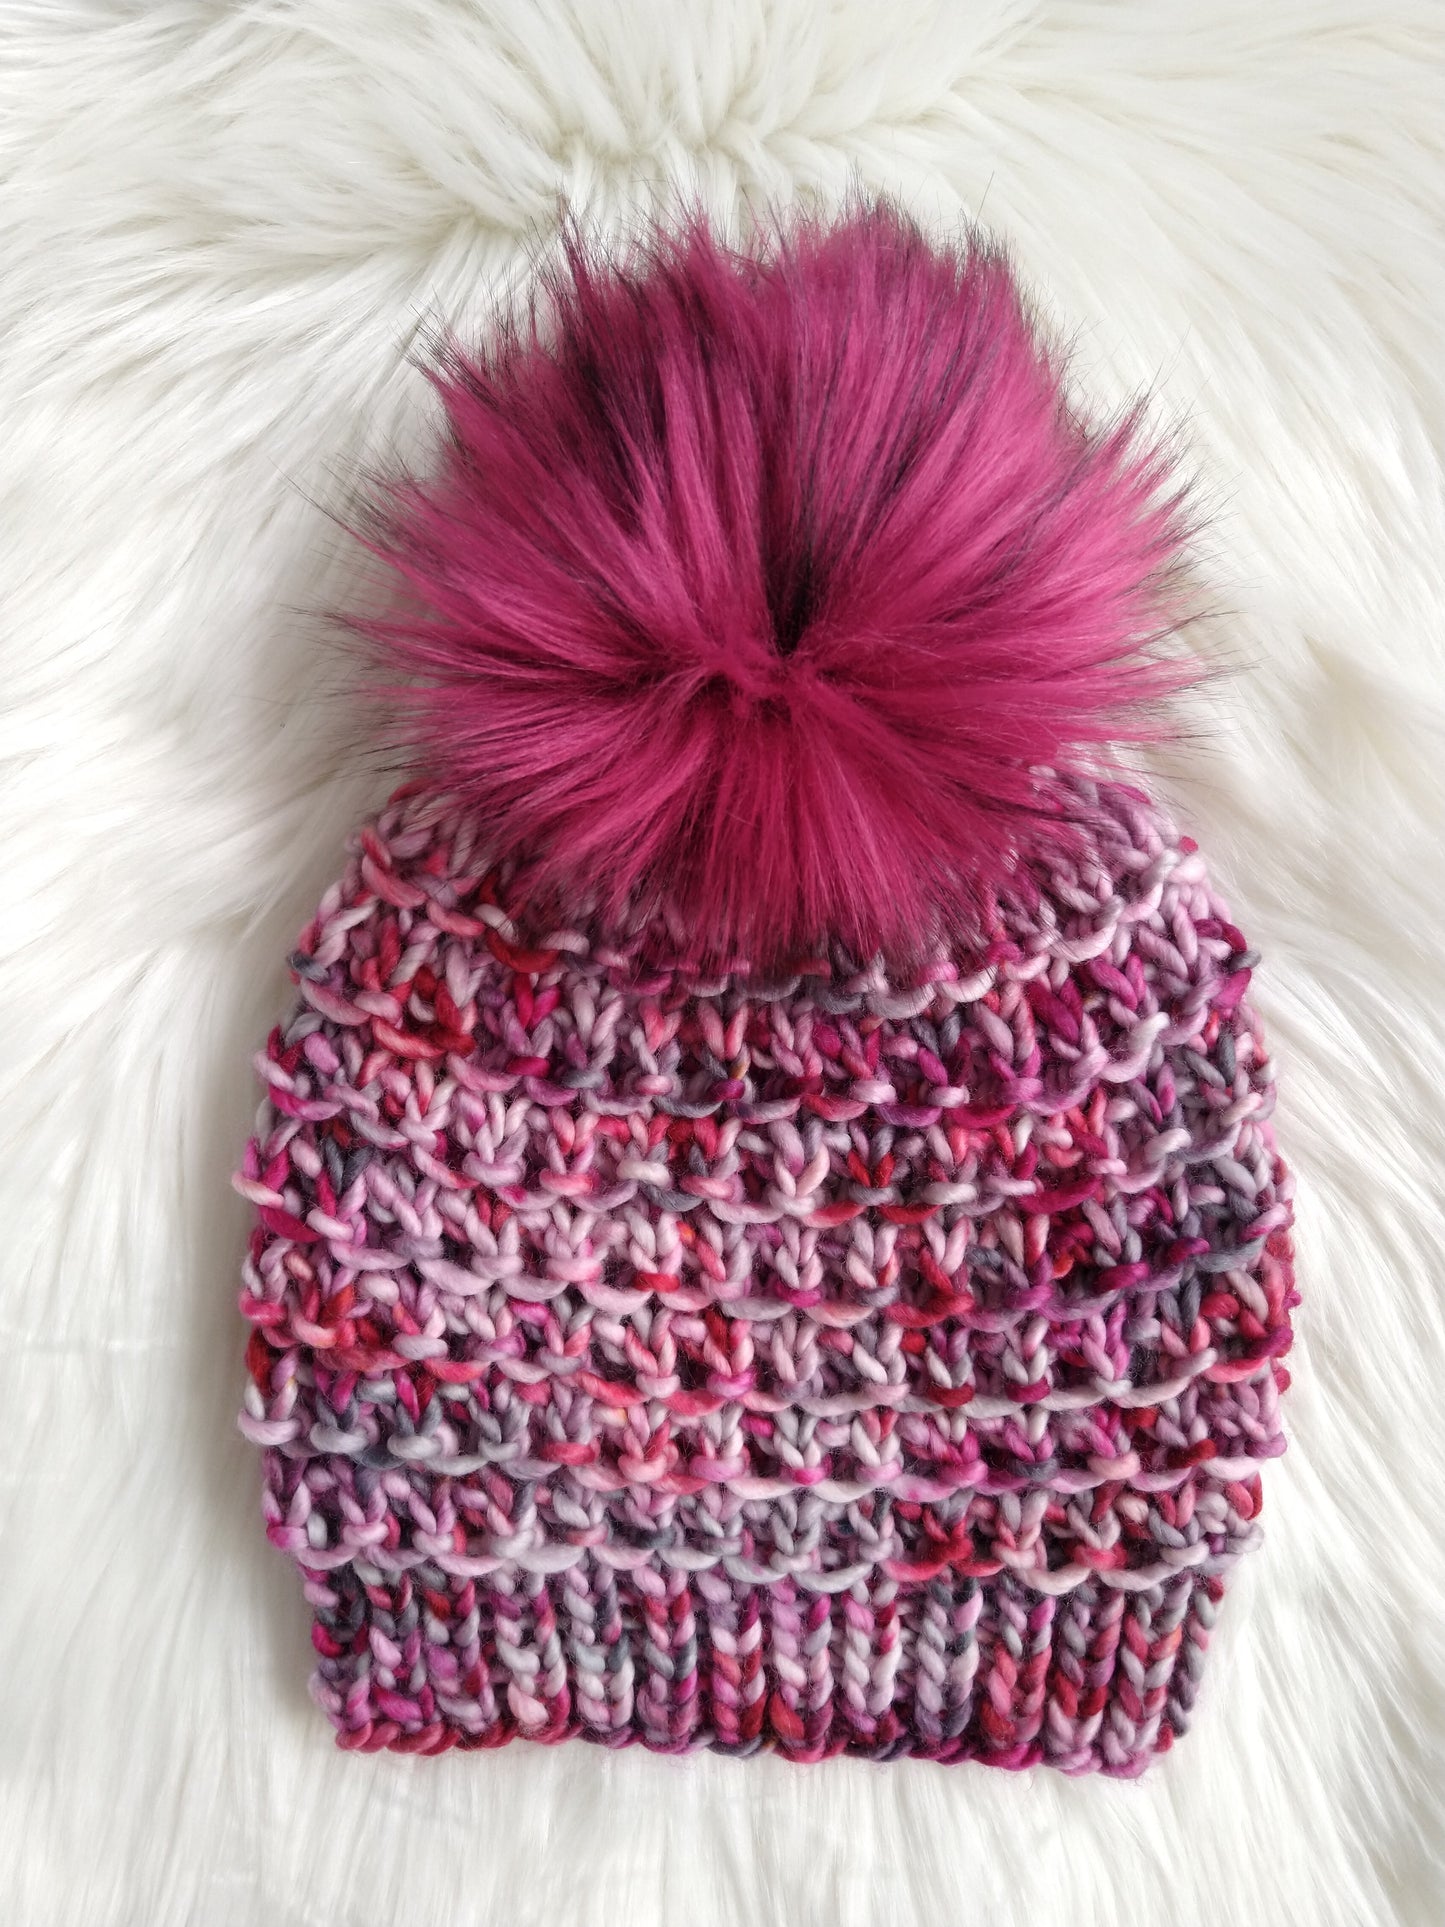 Kappa Hat and Cowl Knitting Pattern